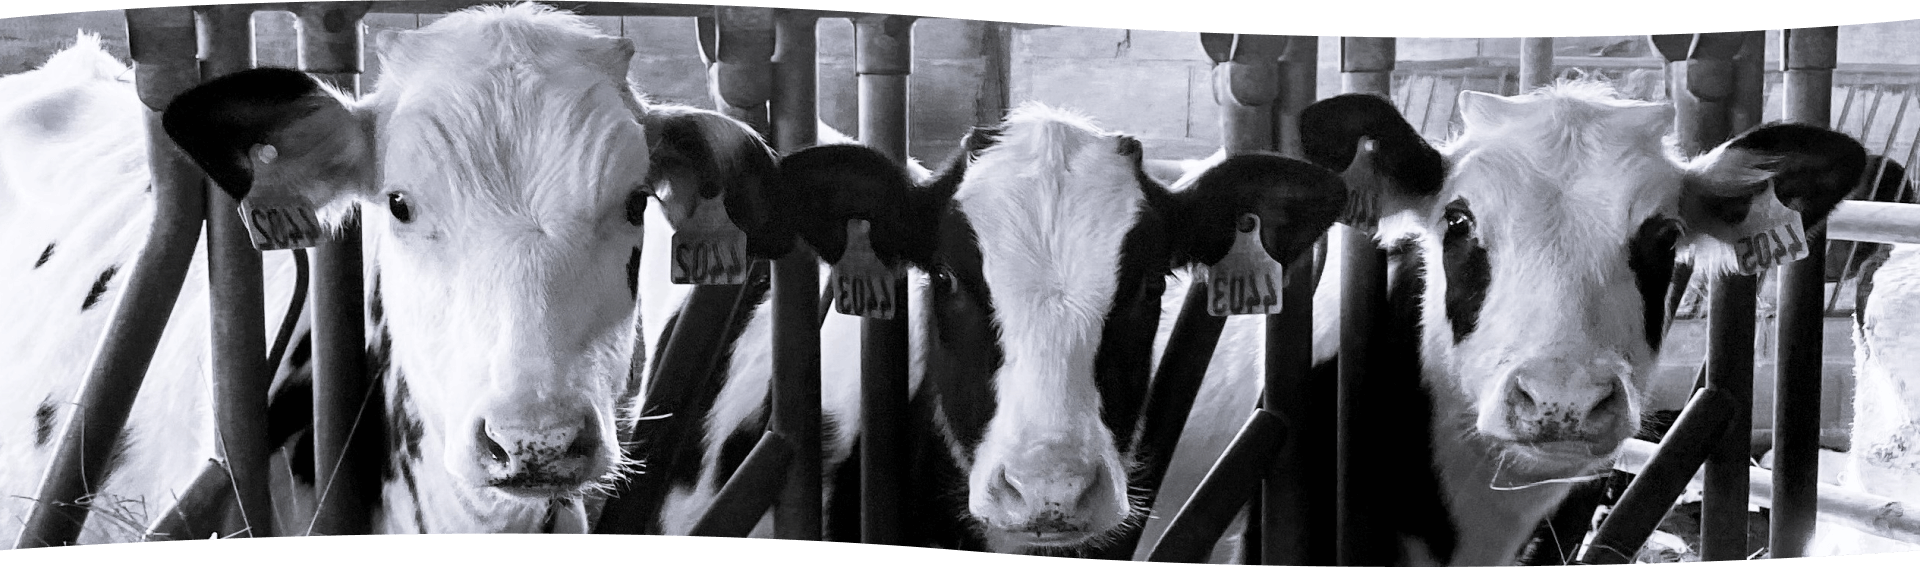 Ferme laitière, produits laitiers Montauban, La ferme des Tilleuls